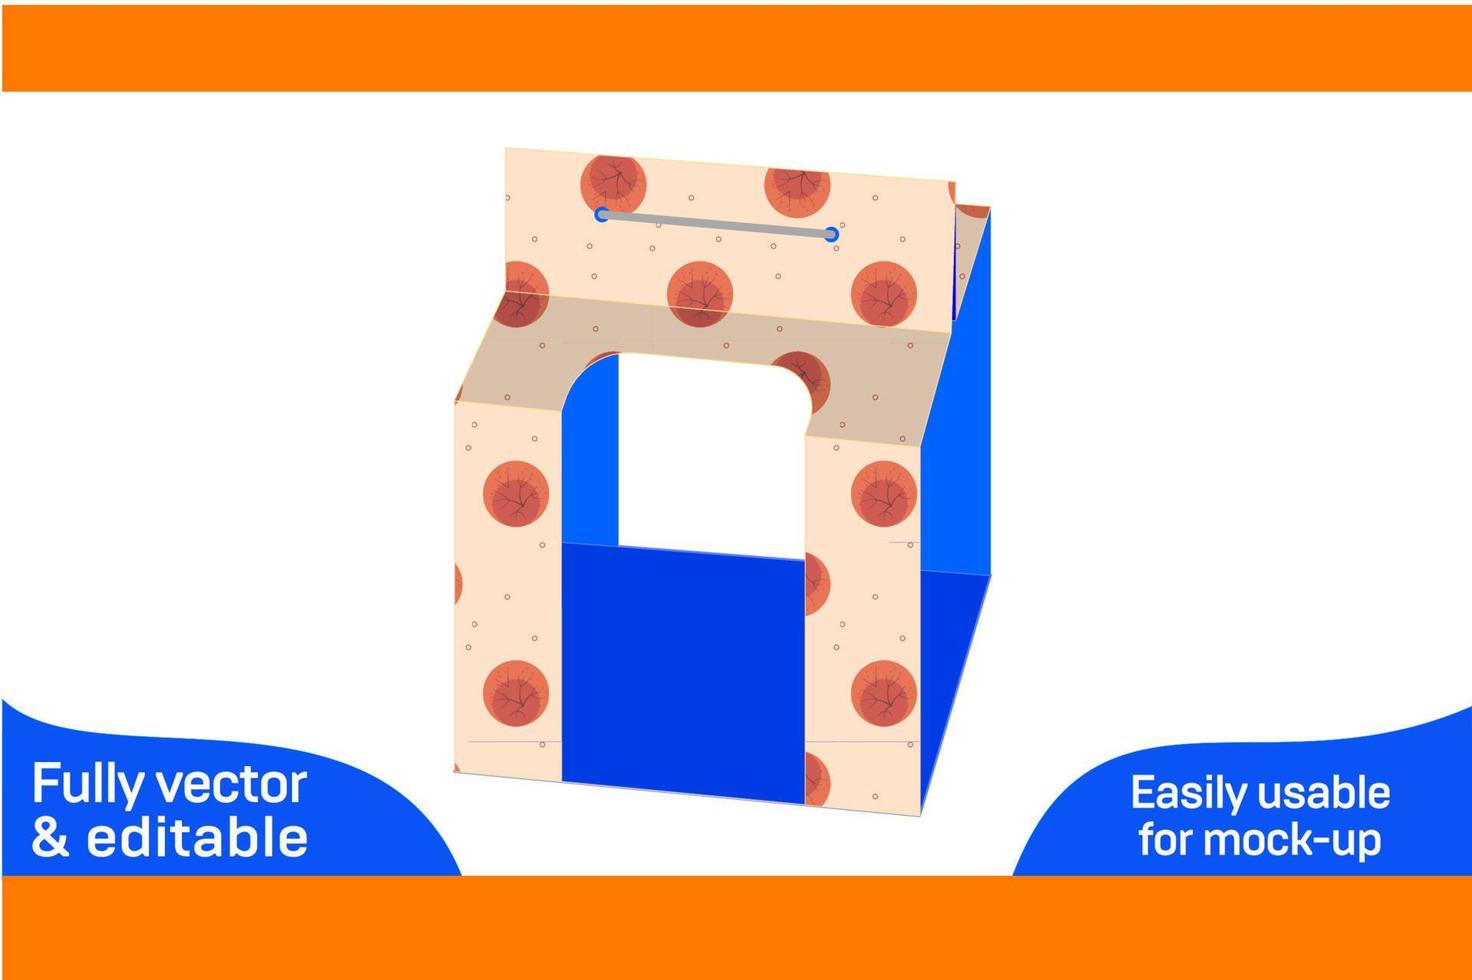 Anzeige Becher oder Glas Kasten, Überraschung Geschenk Box Dieline Vorlage und 3d Box Design 3d Box vektor